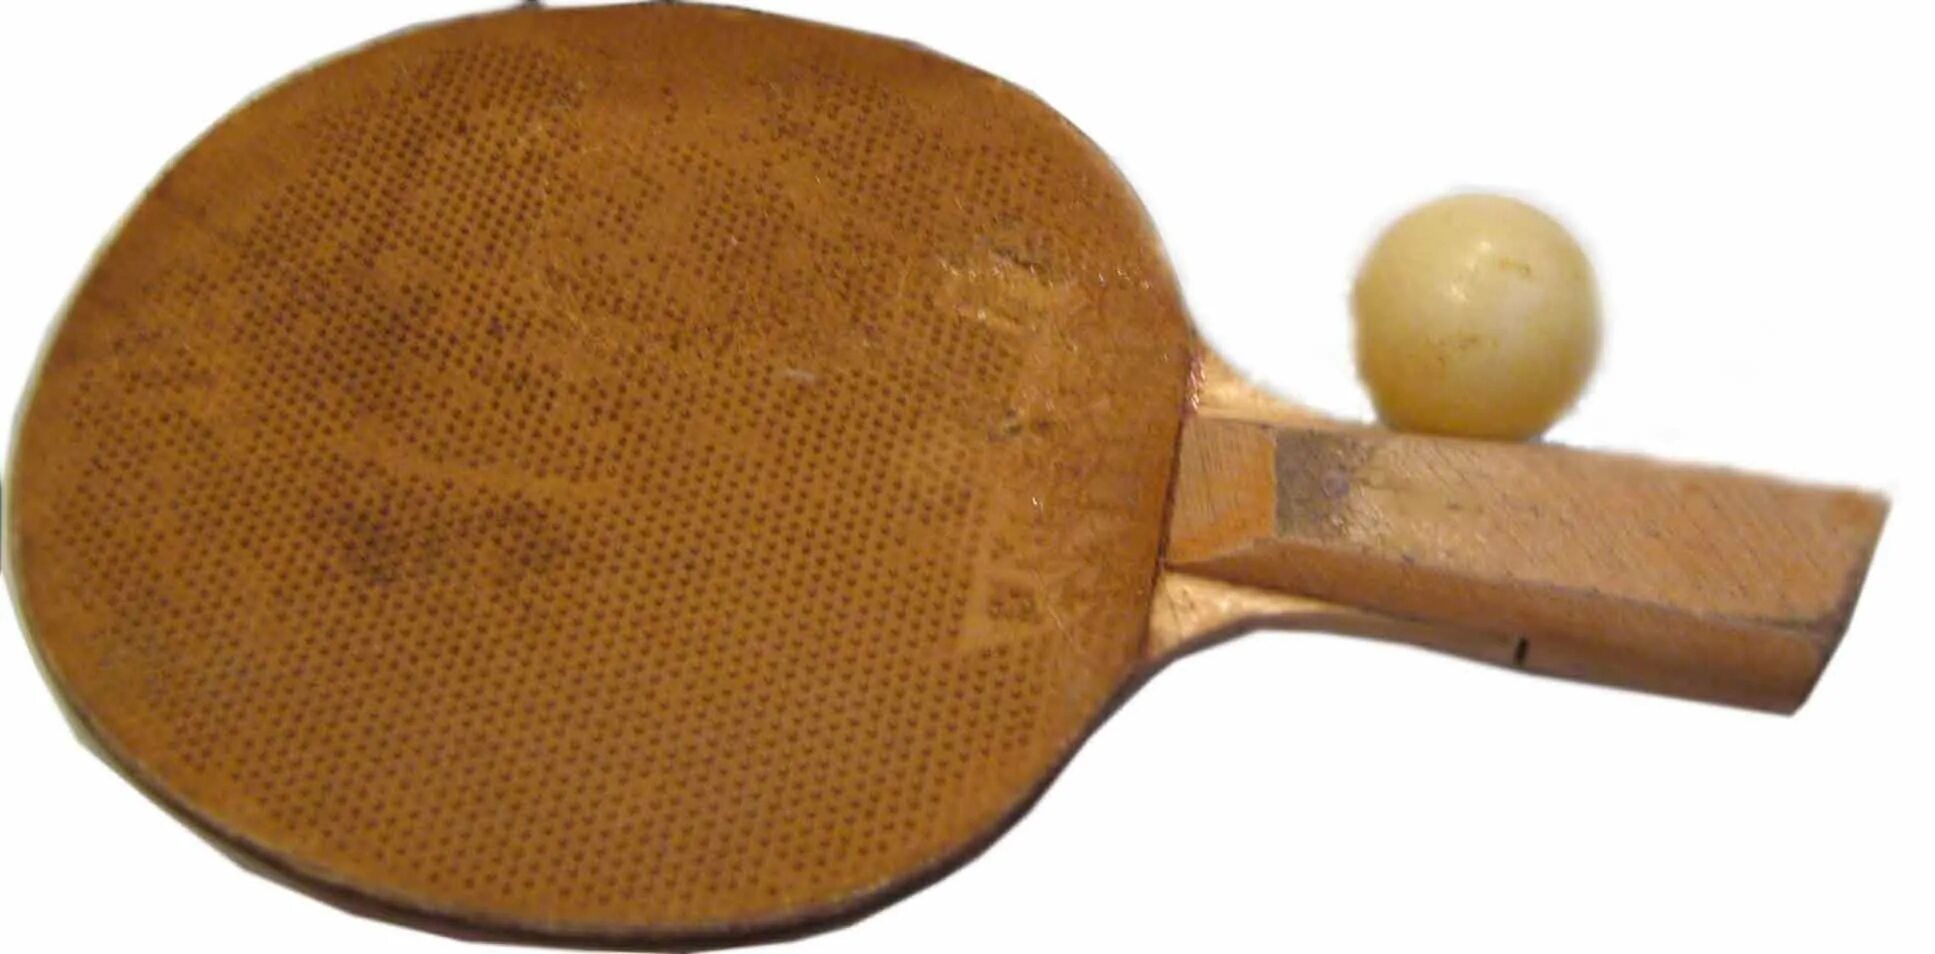 Настольный теннис возникновение. Sprinter h015 ракетка для настольного тенниса. Советская ракетка для настольного тенниса пинг понг. TT Star Standart GB/t9831 ракетка для тенниса.